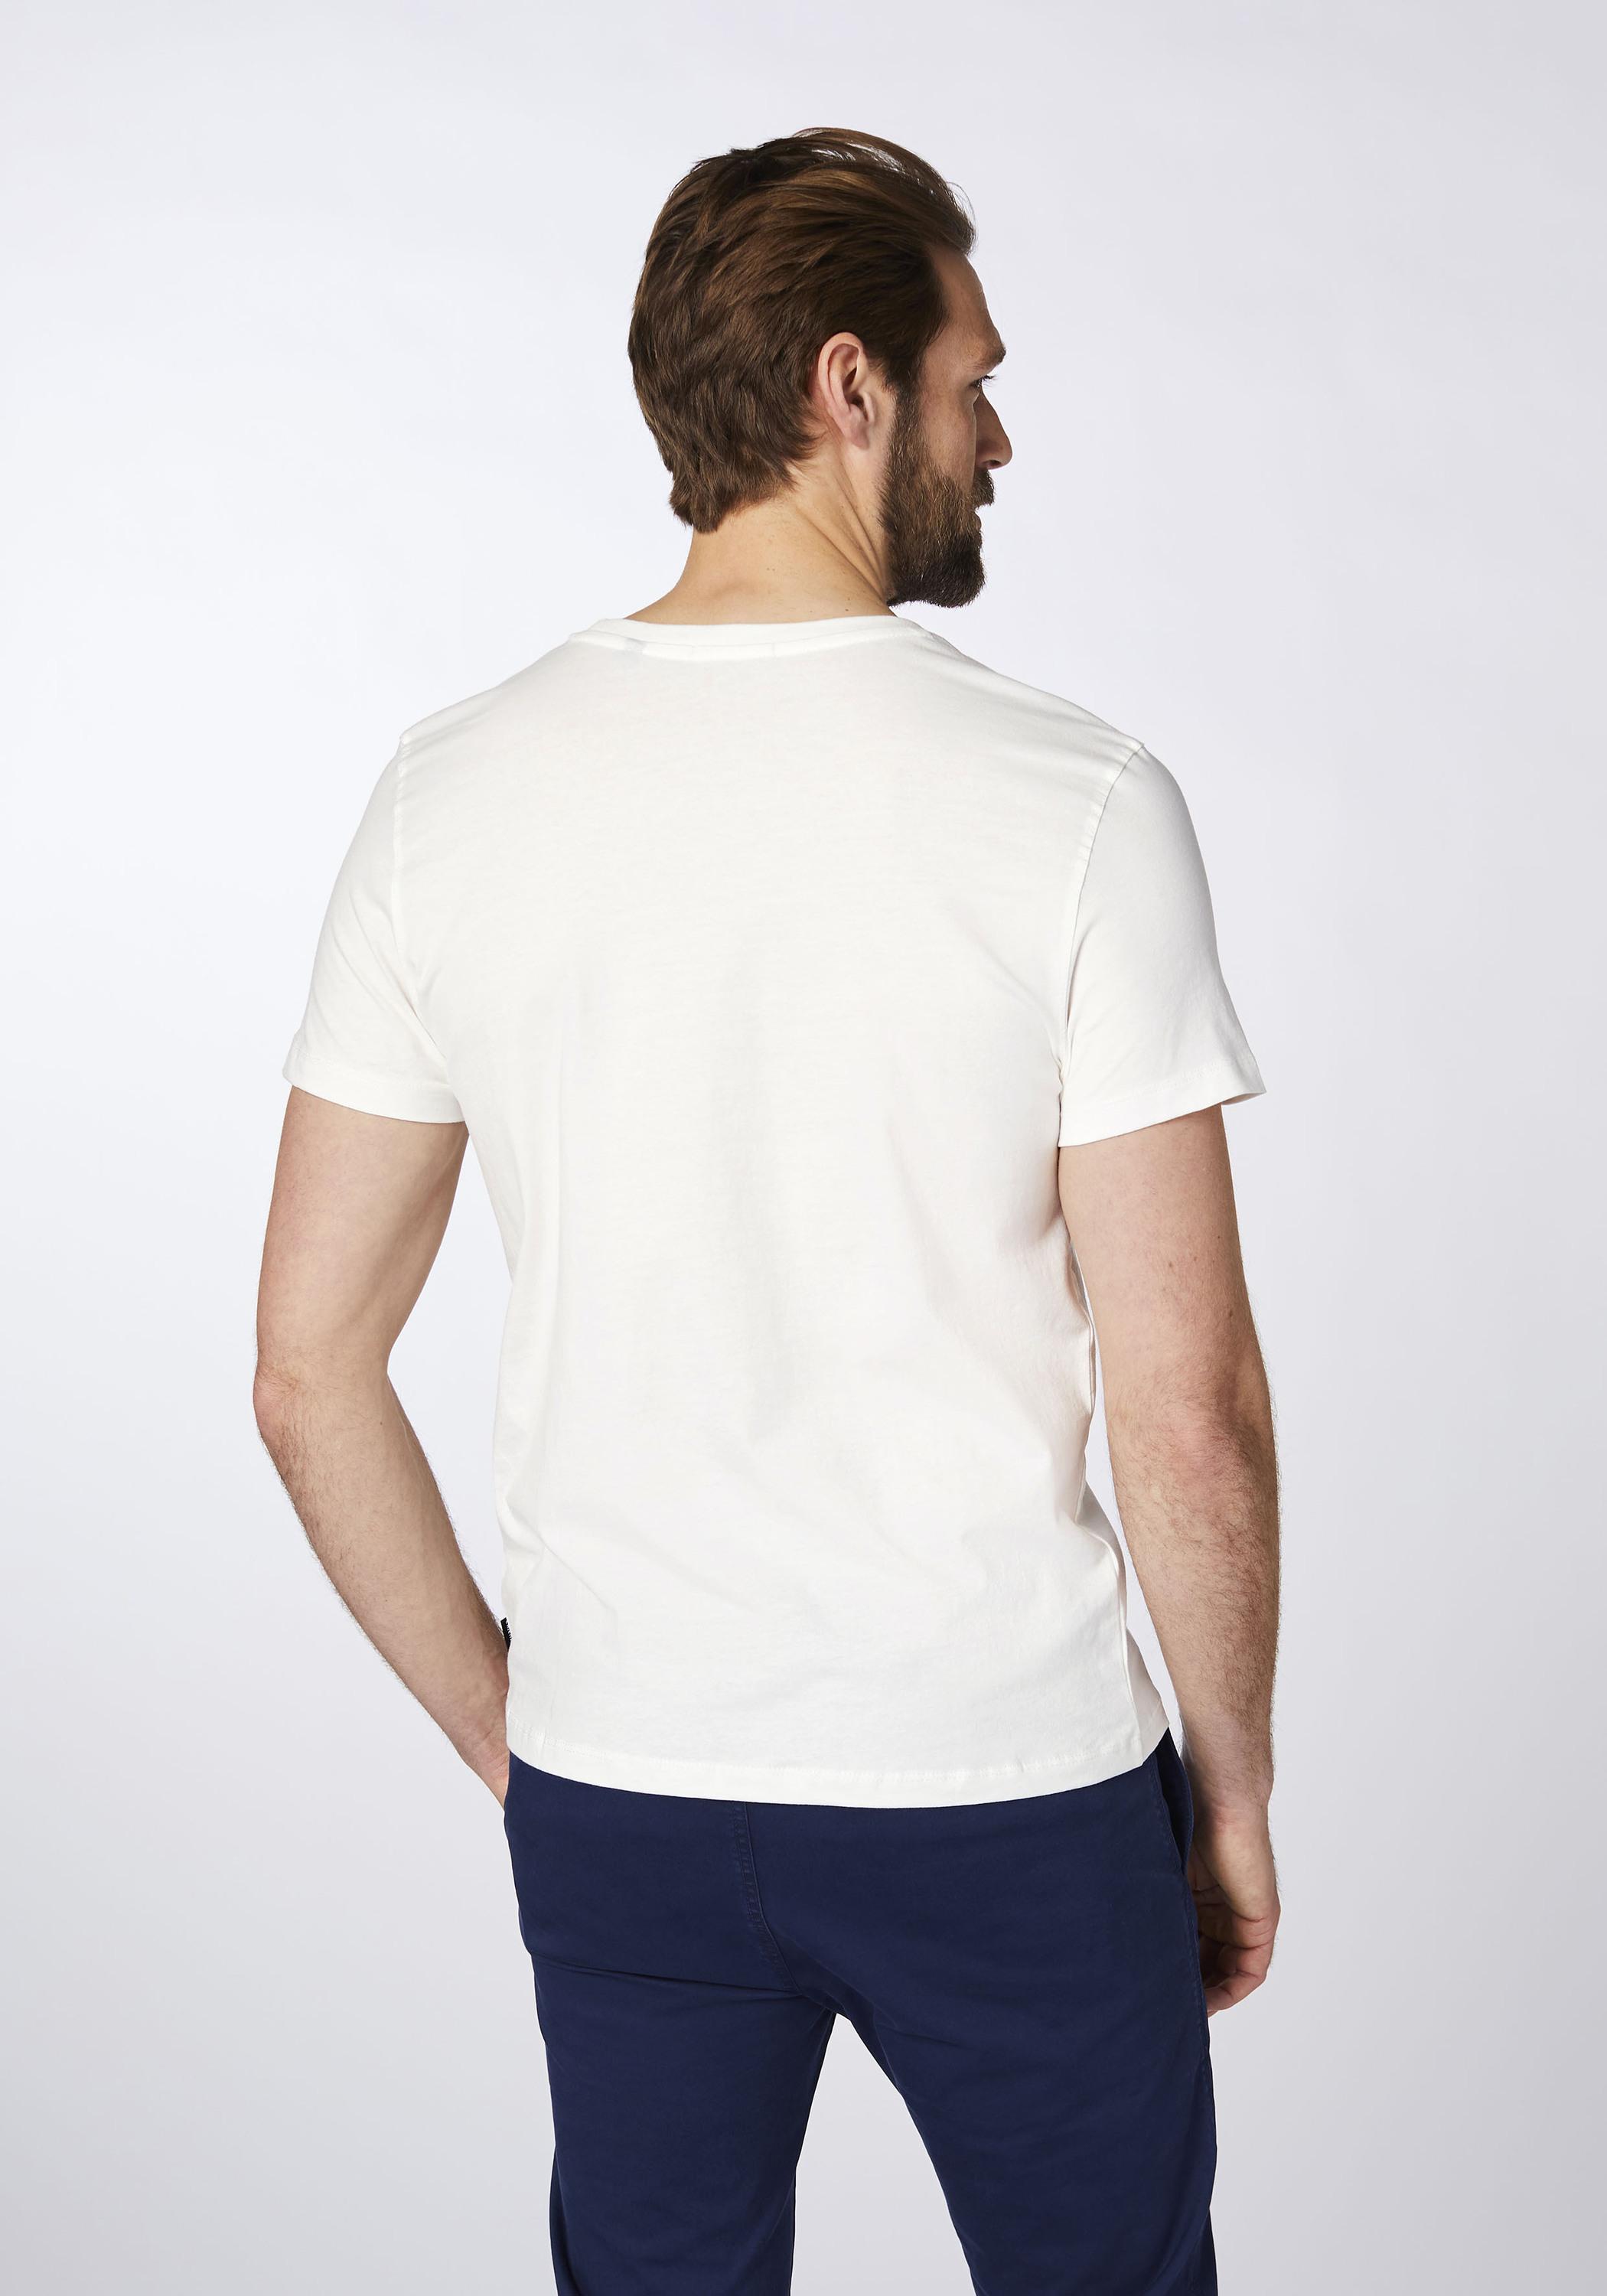 Chiemsee T-Shirt T-Shirt Herren Wht/Md kaufen im von Dif Shop SportScheck Grn Online